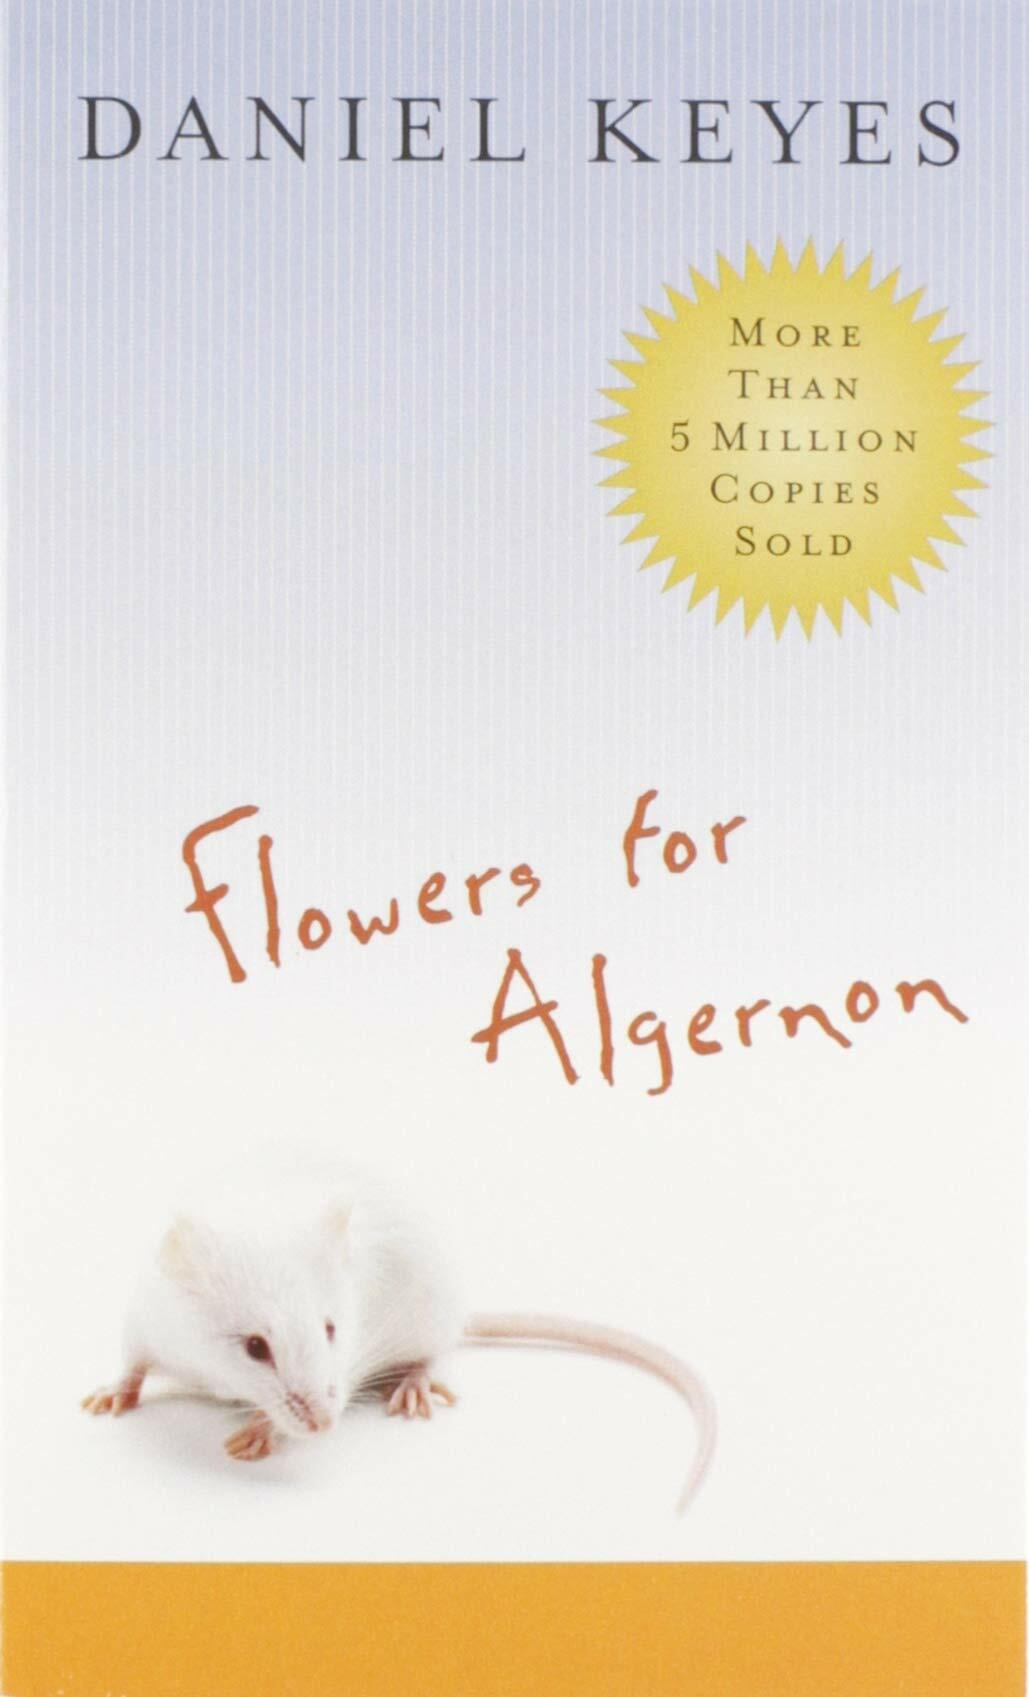 Flowers for Algernon (Mass Market Paperback)